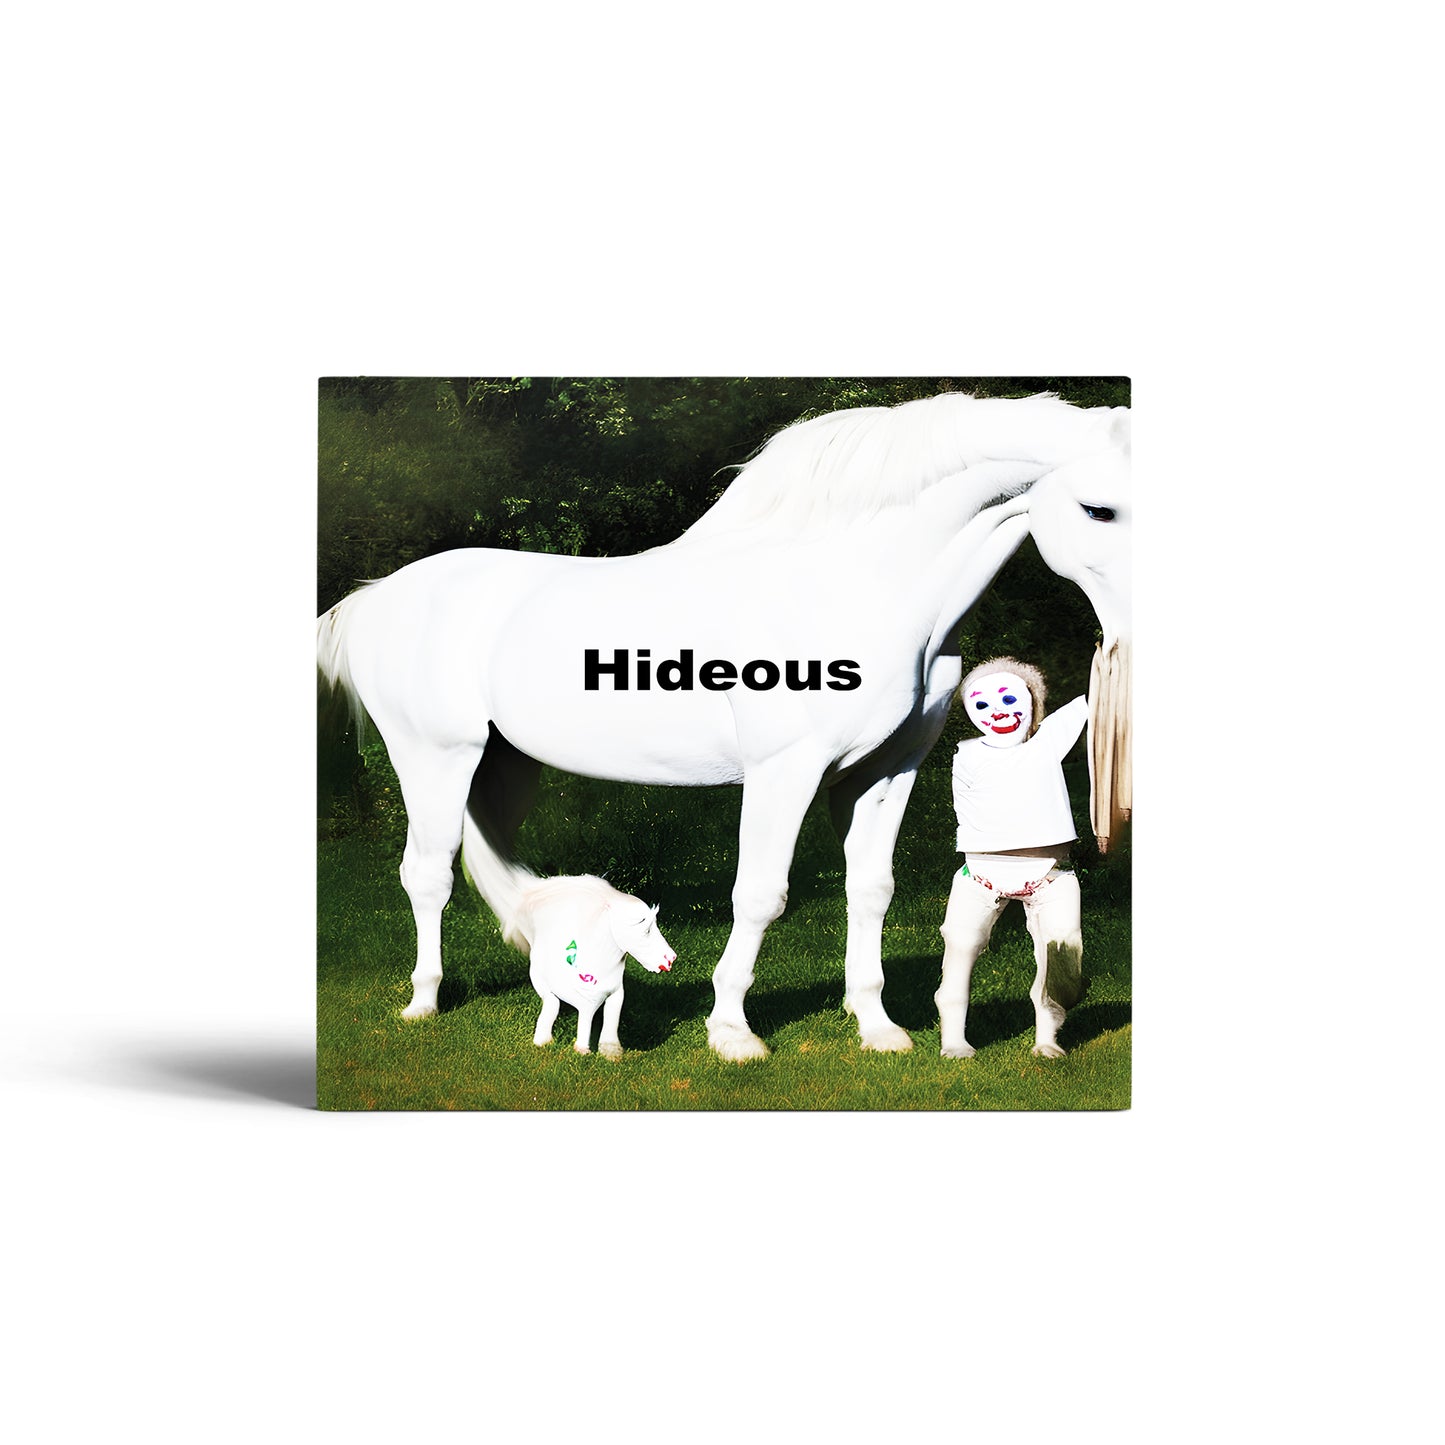 CD - Hideous - Ouija Macc x Golden BSP